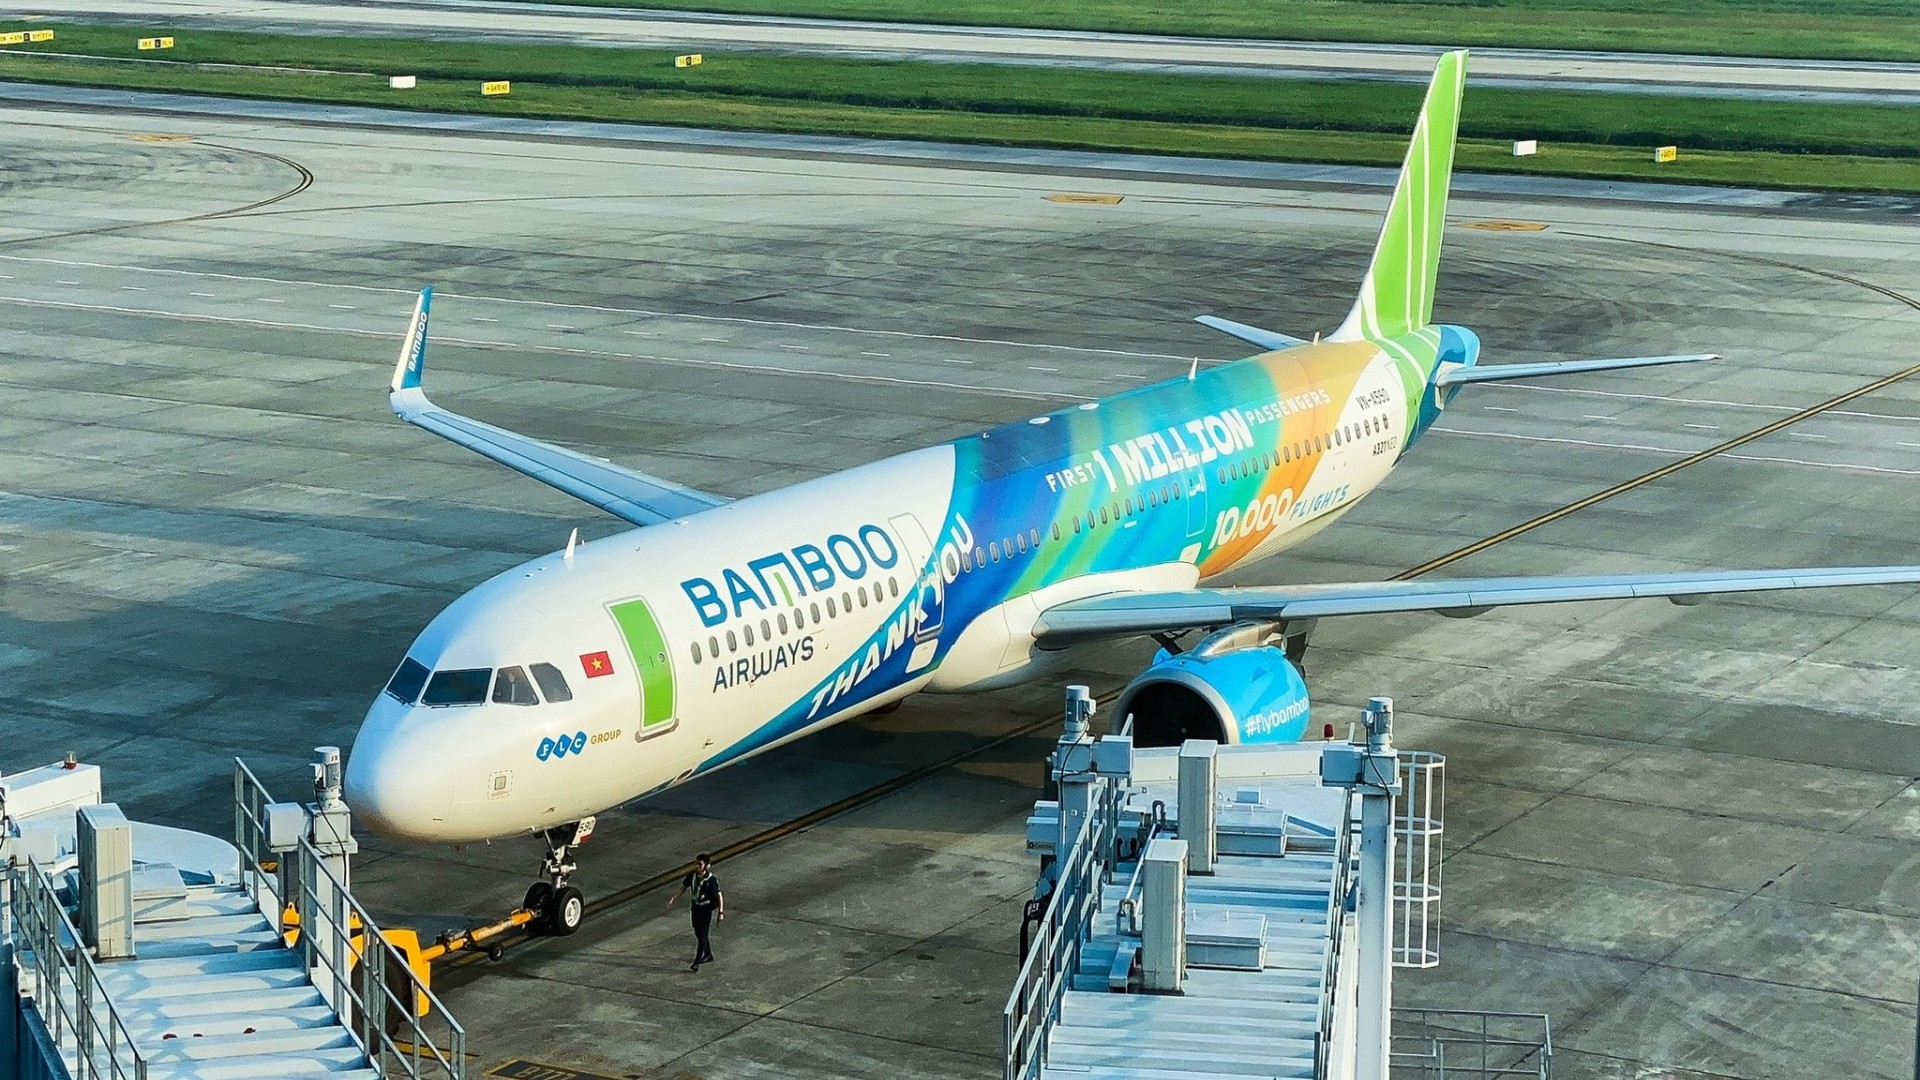 Giá vé máy bay Bamboo Airways ngày 28/9/2022